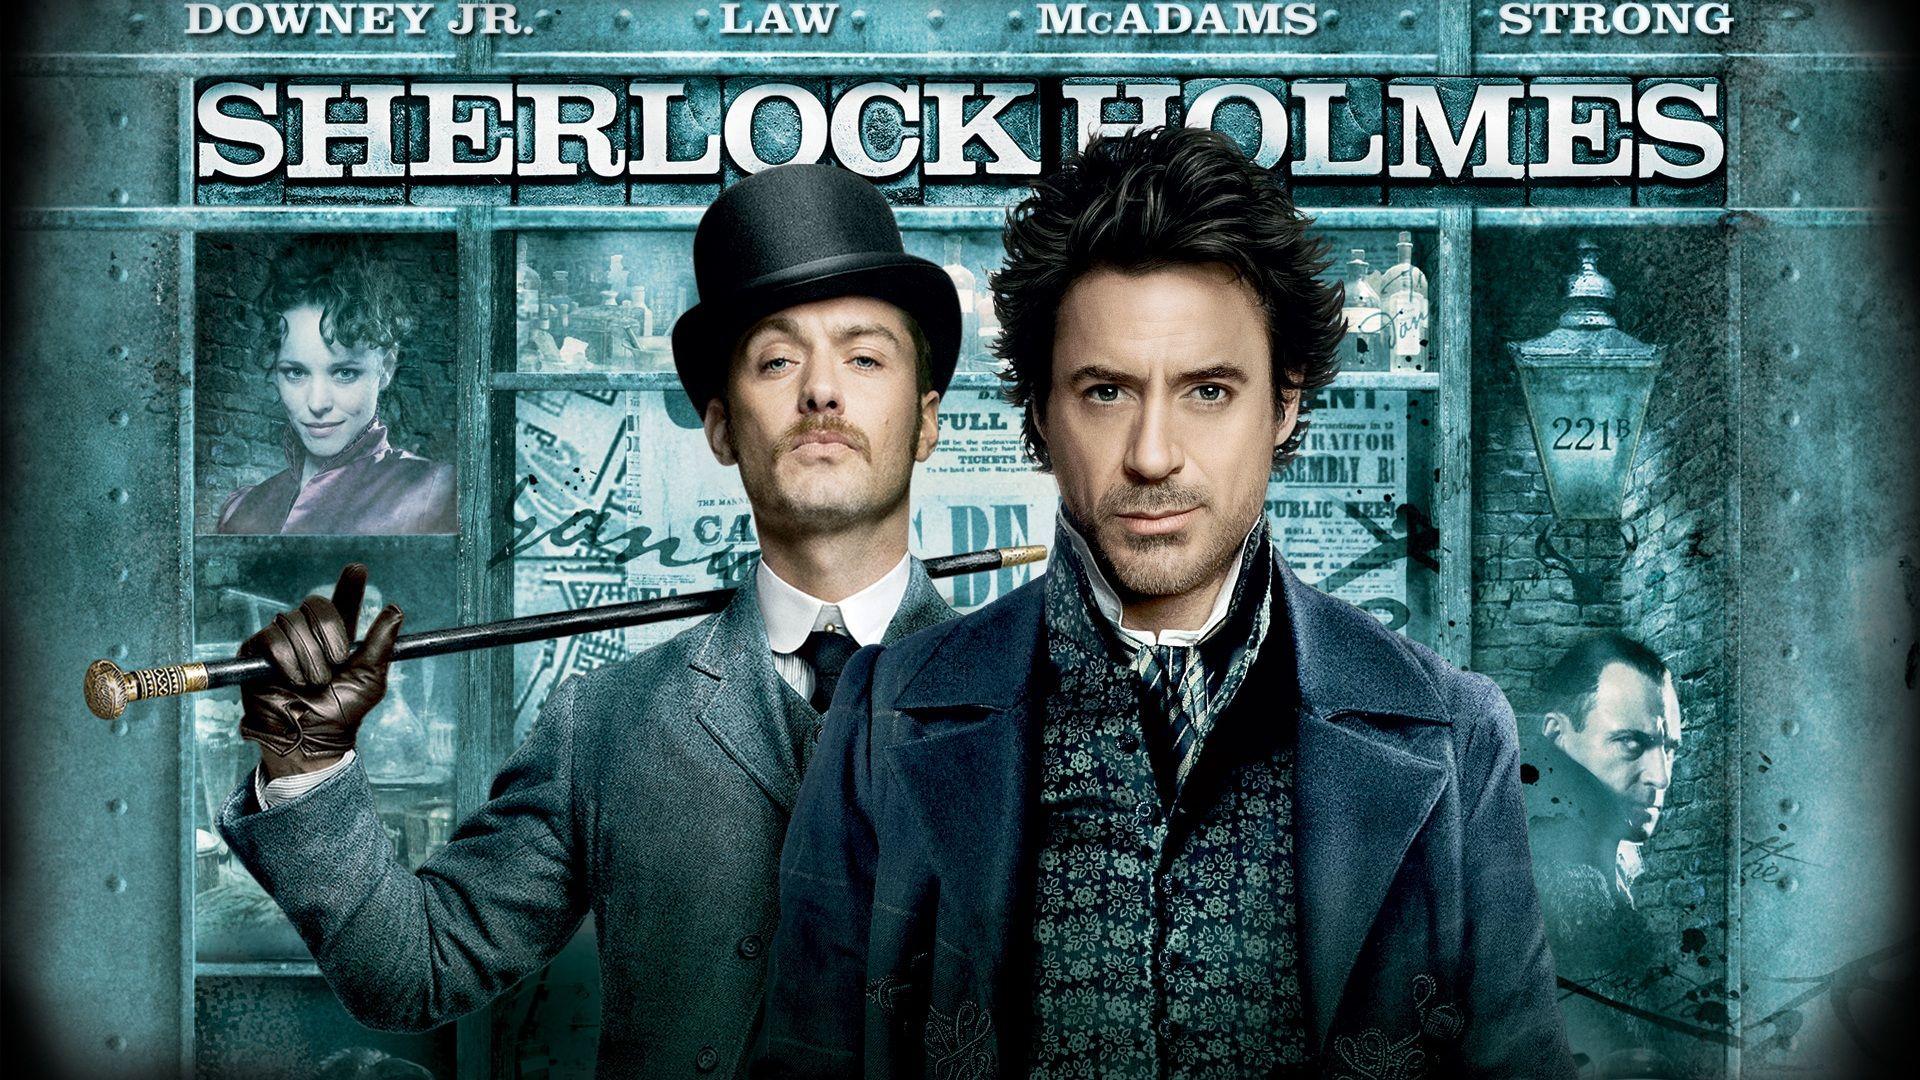 Sherlock Holmes Wallpaperx1080 Full HD resolution wallpaper